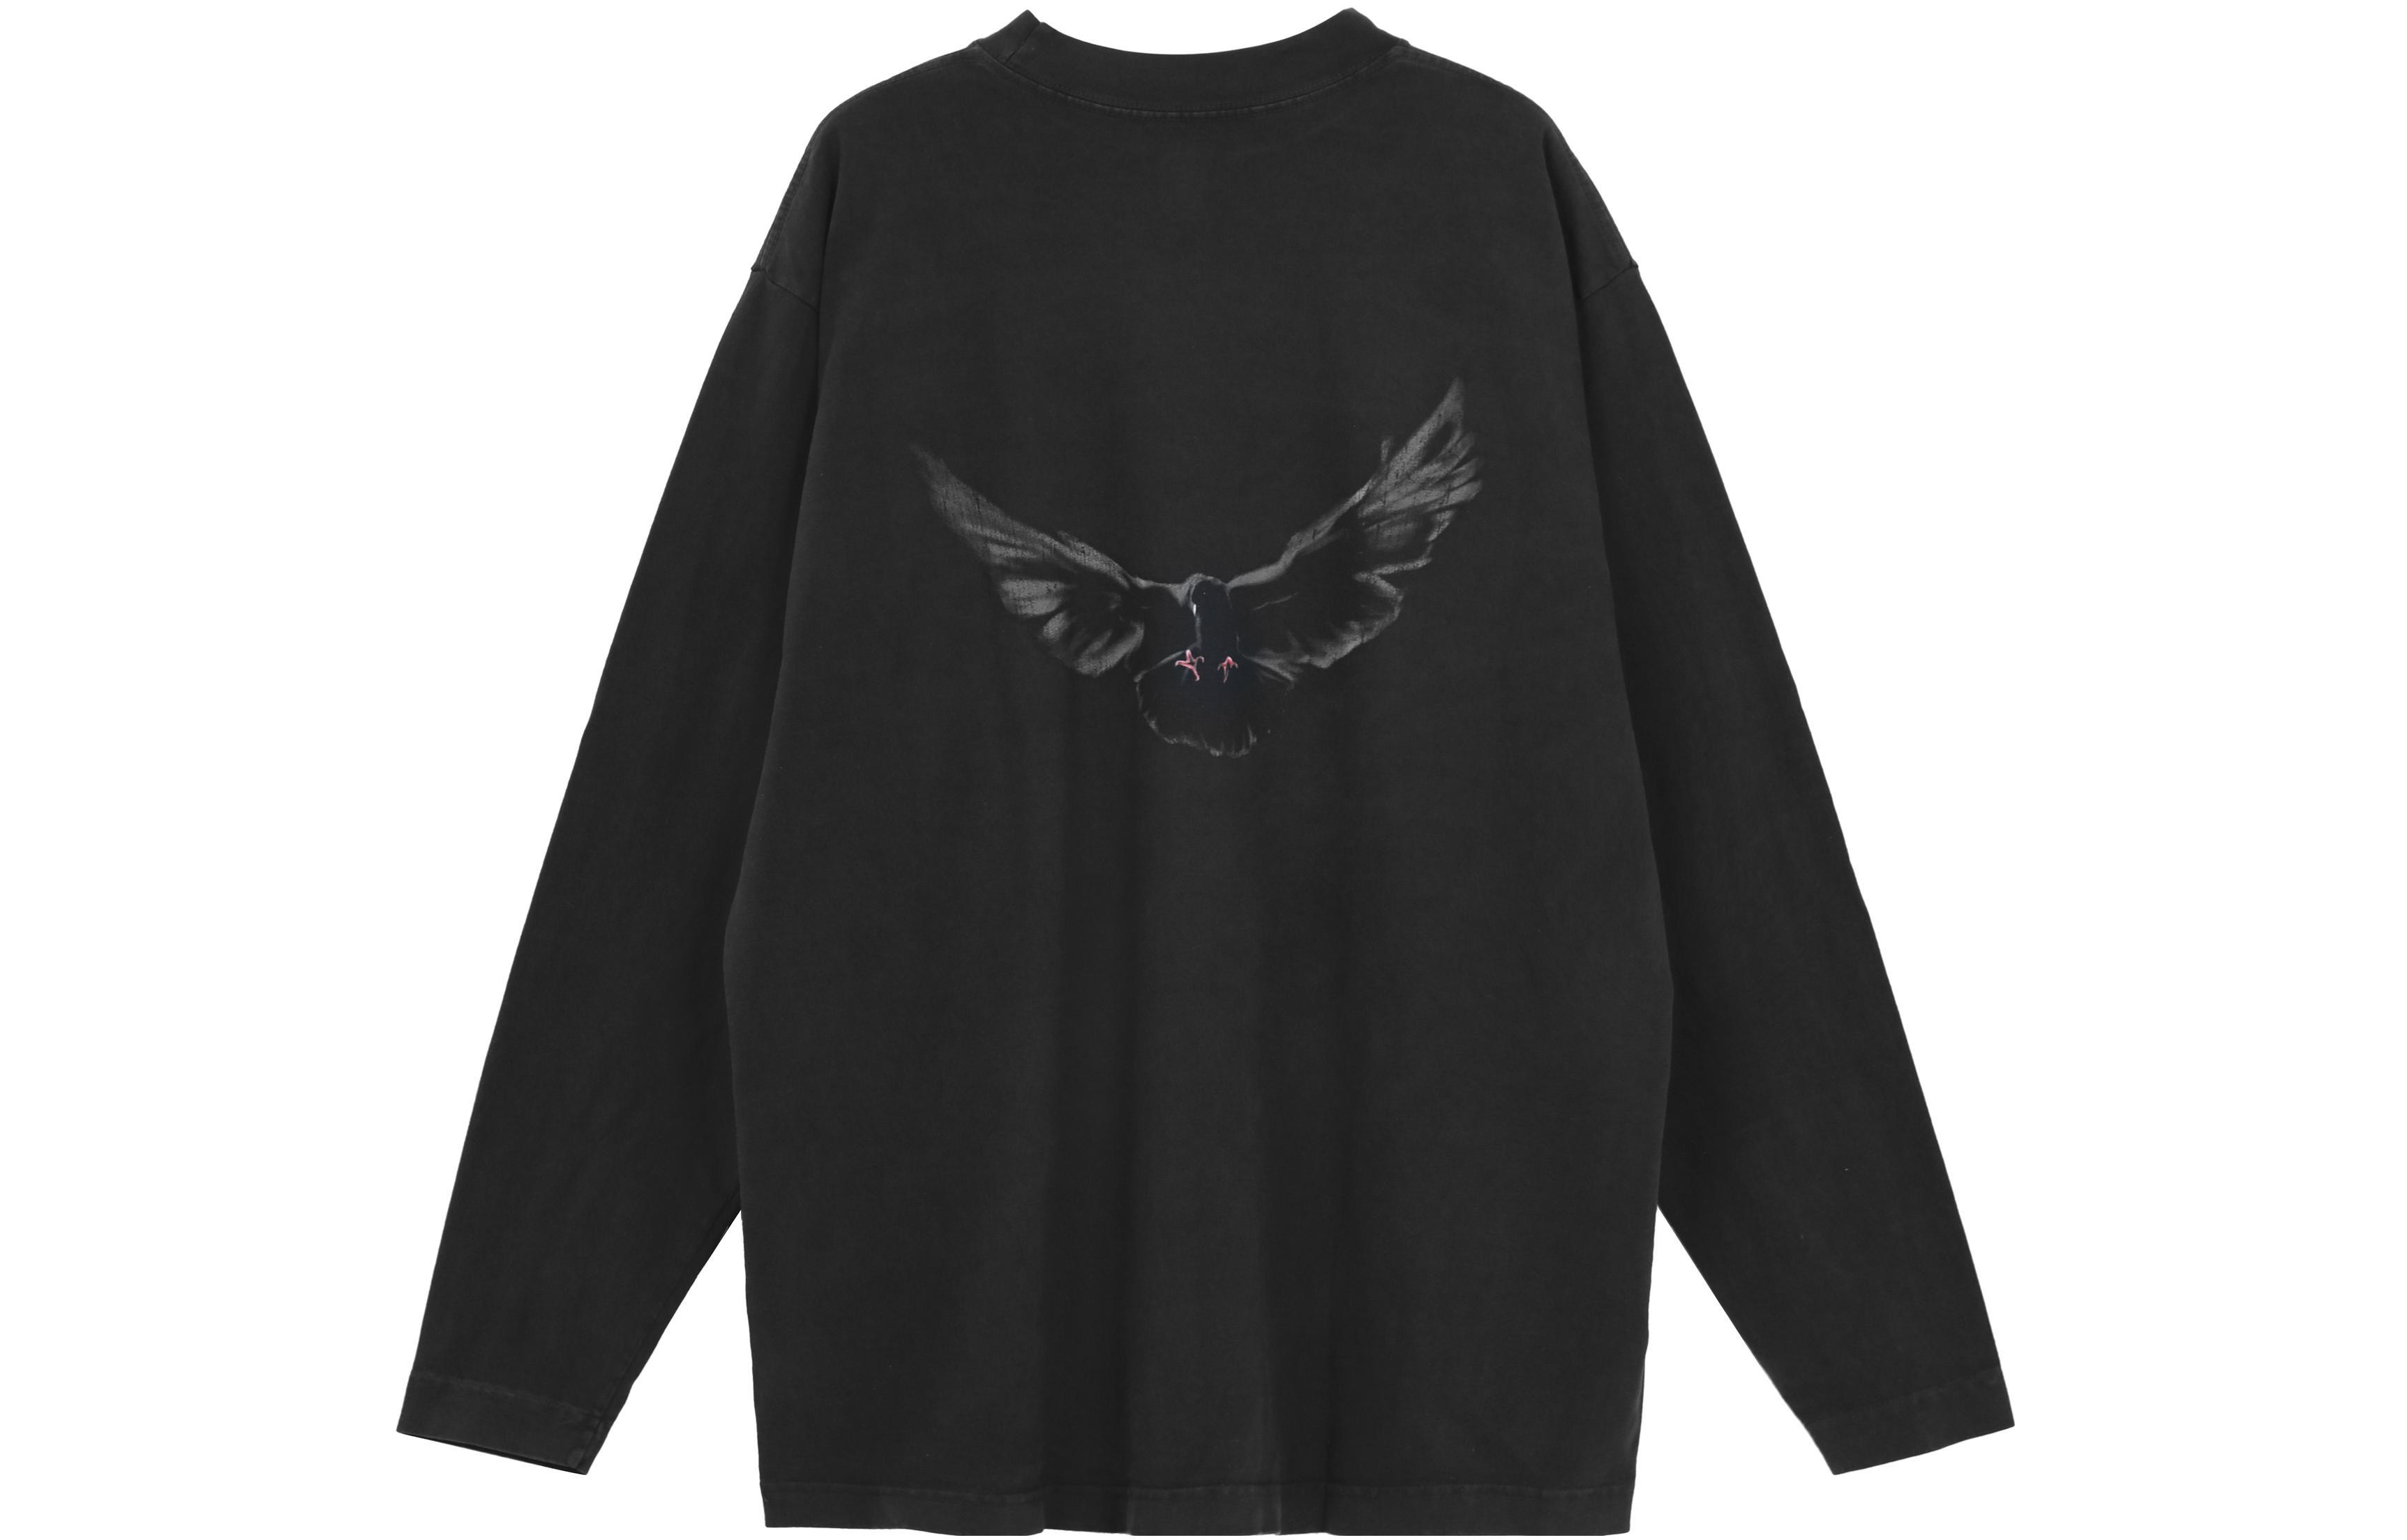 YEEZY X Gap X Balenciaga Dove Longsleeve Tee Washed Black LogoT